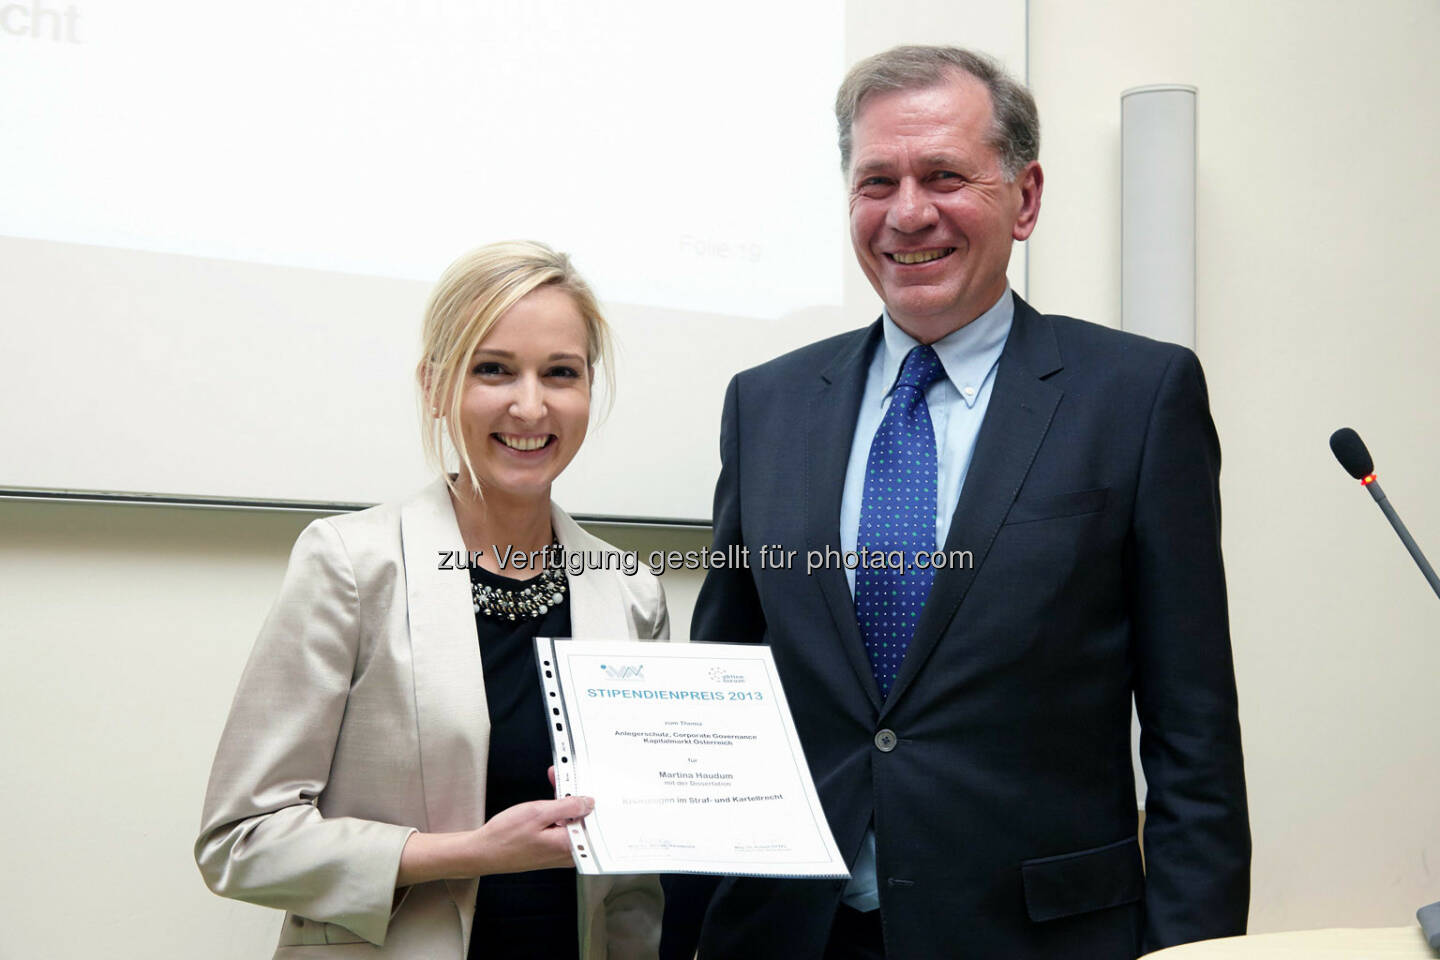 Martina Haudum - Anerkennungspreis für die Dissertation
„Kronzeugen im Straf- und Kartellrecht“ im Wert von 1.000 Euro
